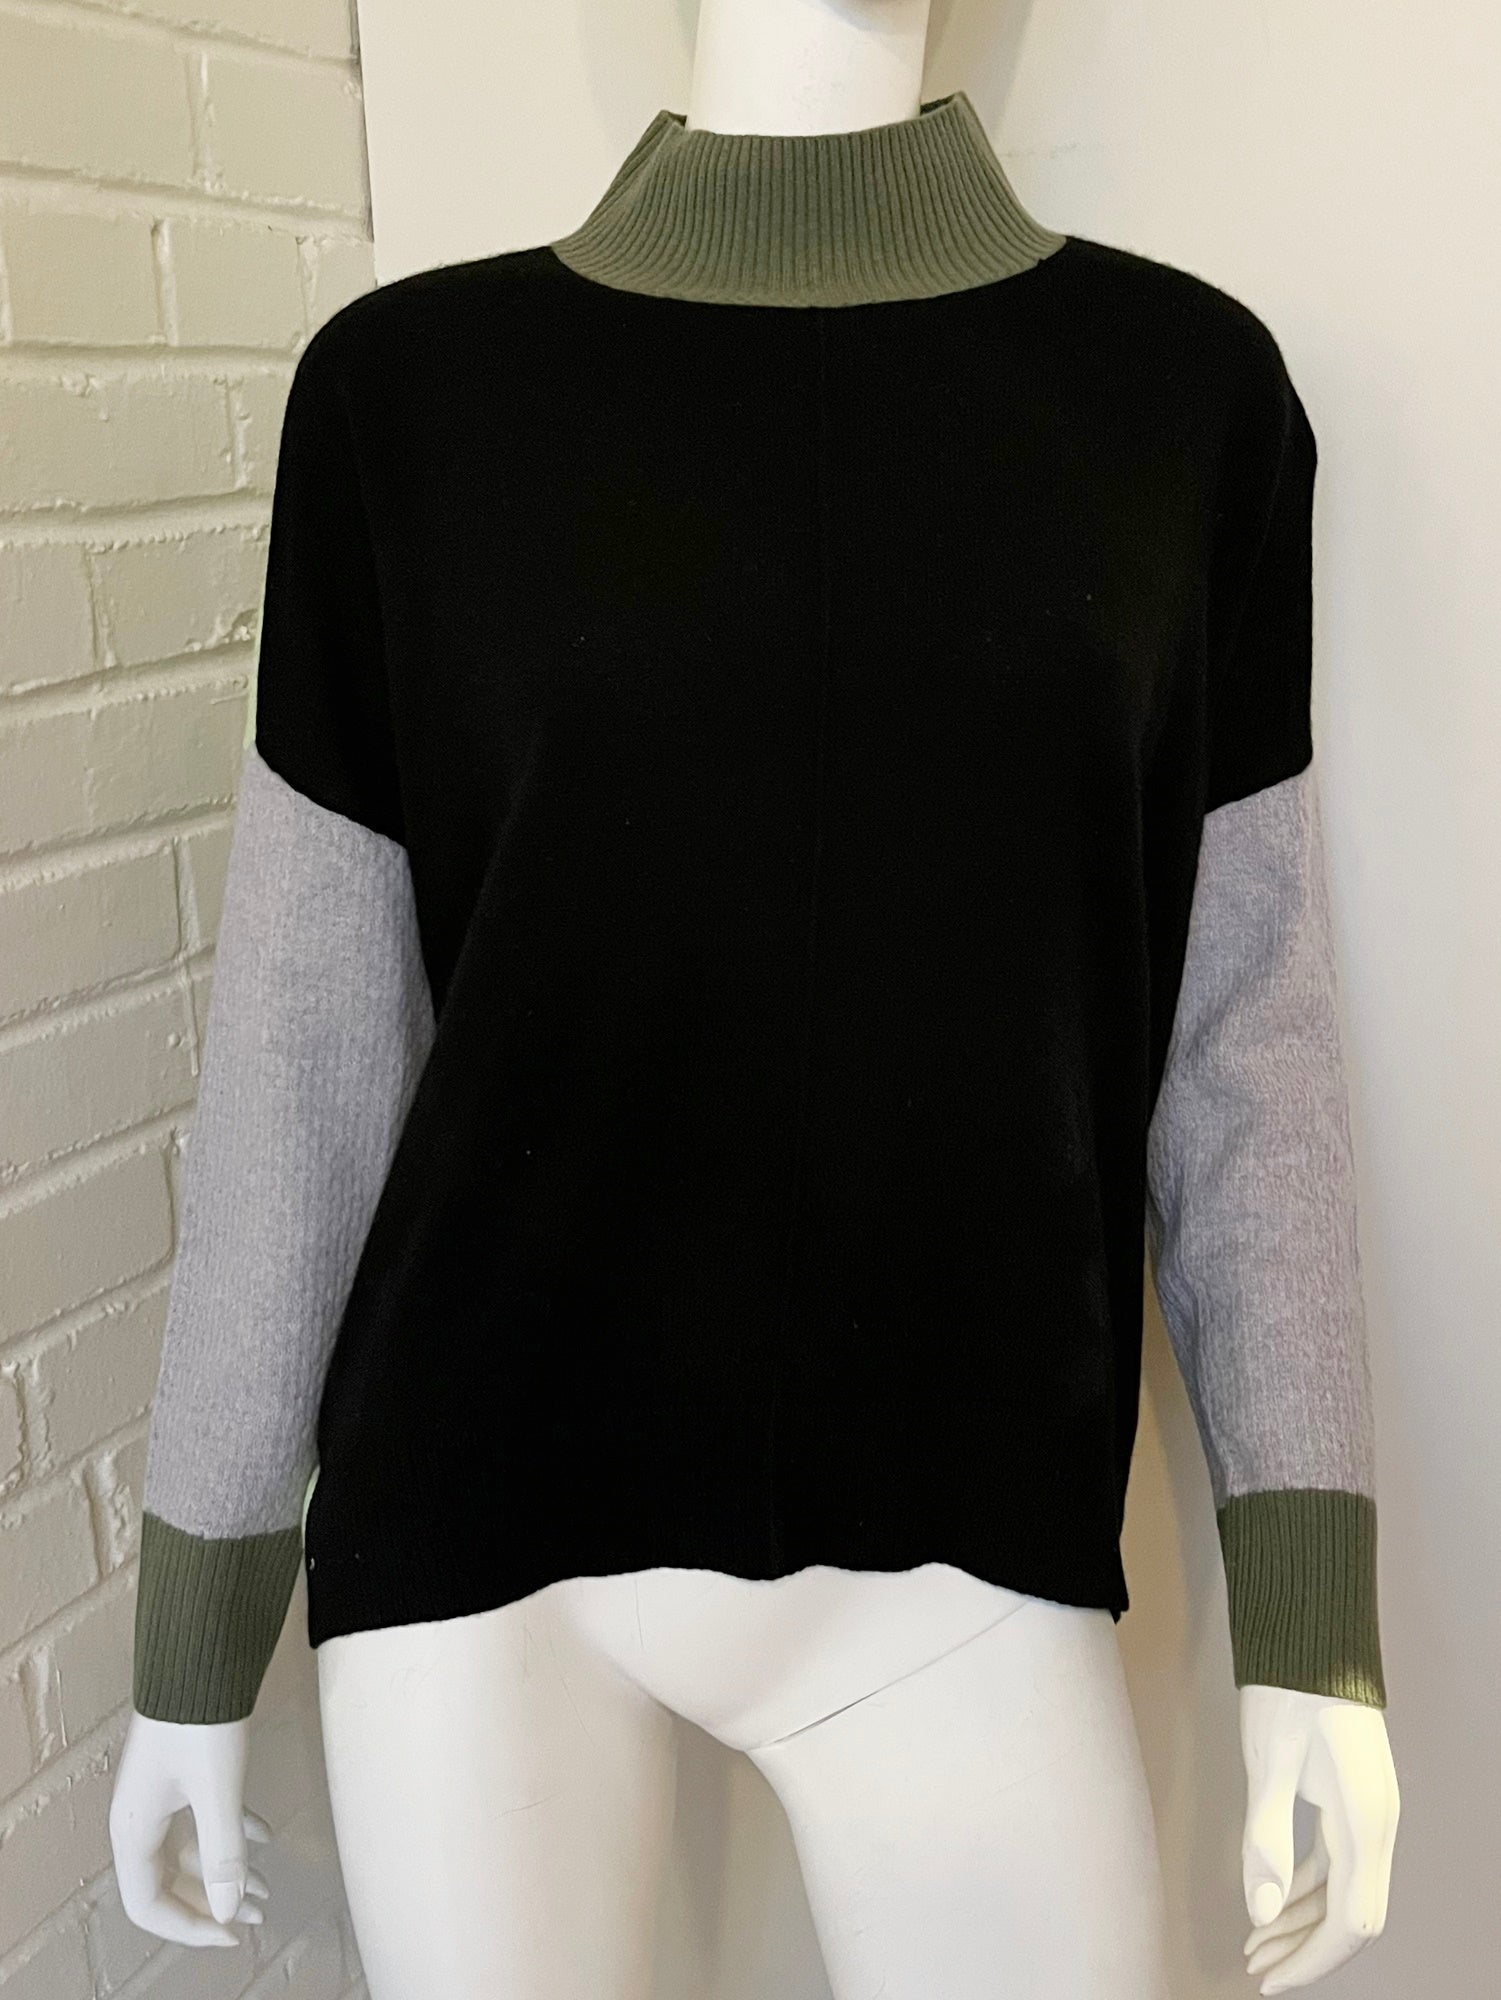 Color Block Cashmere Sweater Size Medium